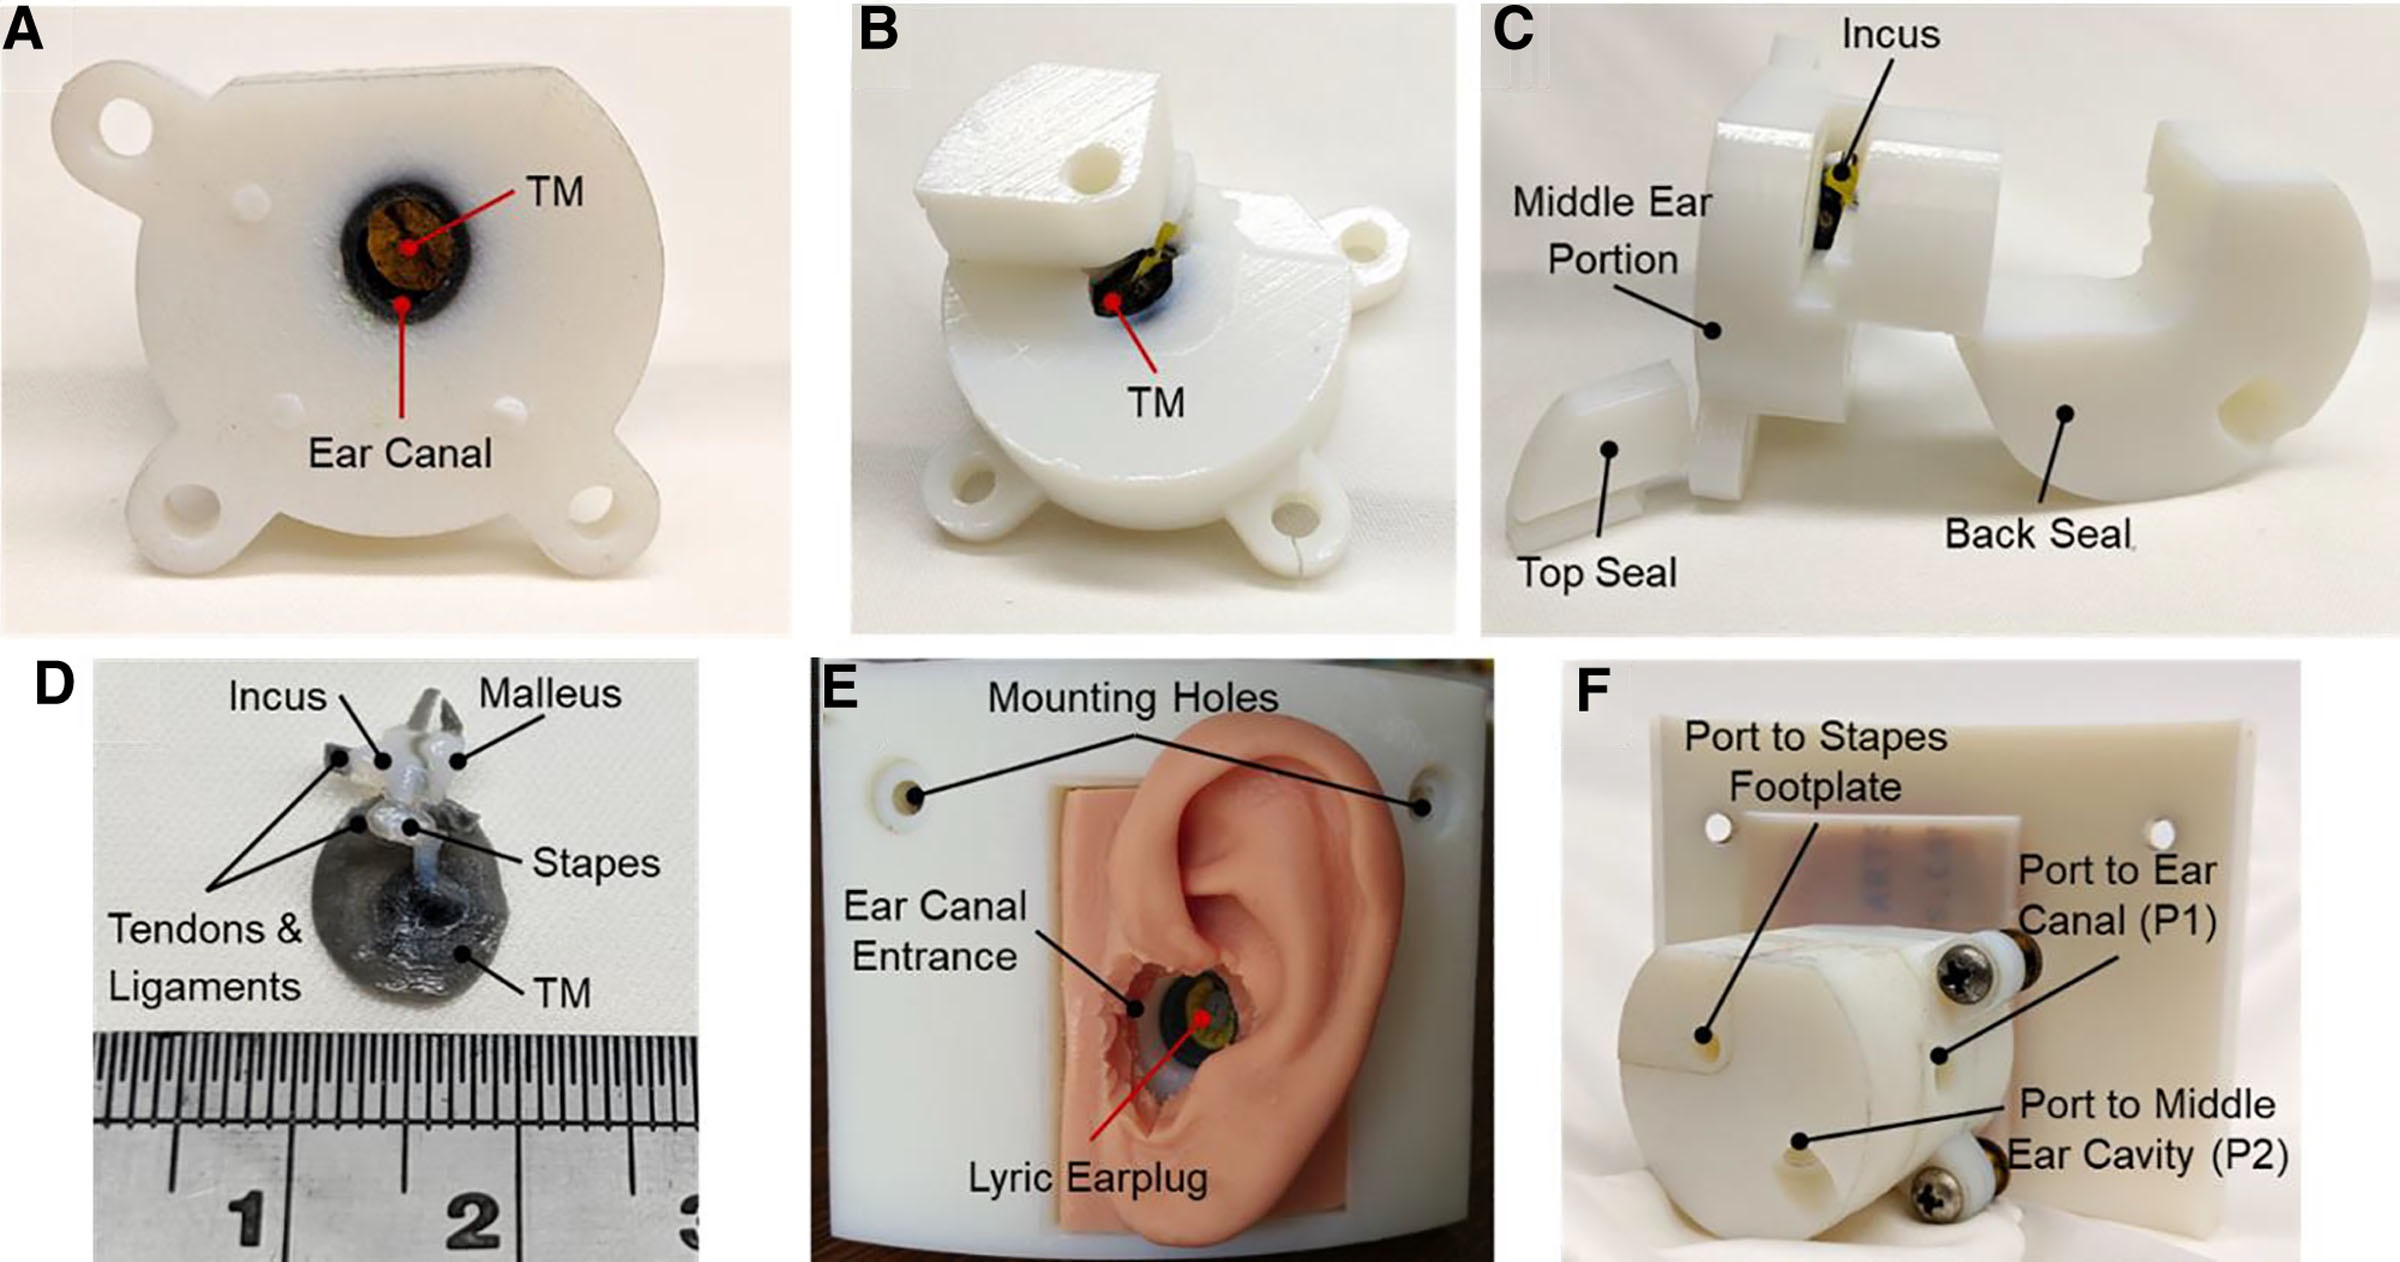 Images d'une impression finie de la partie non assemblée de l'oreille moyenne de la tuberculose imprimée en 3D.  Image via Otologie & Neurotologie Open.